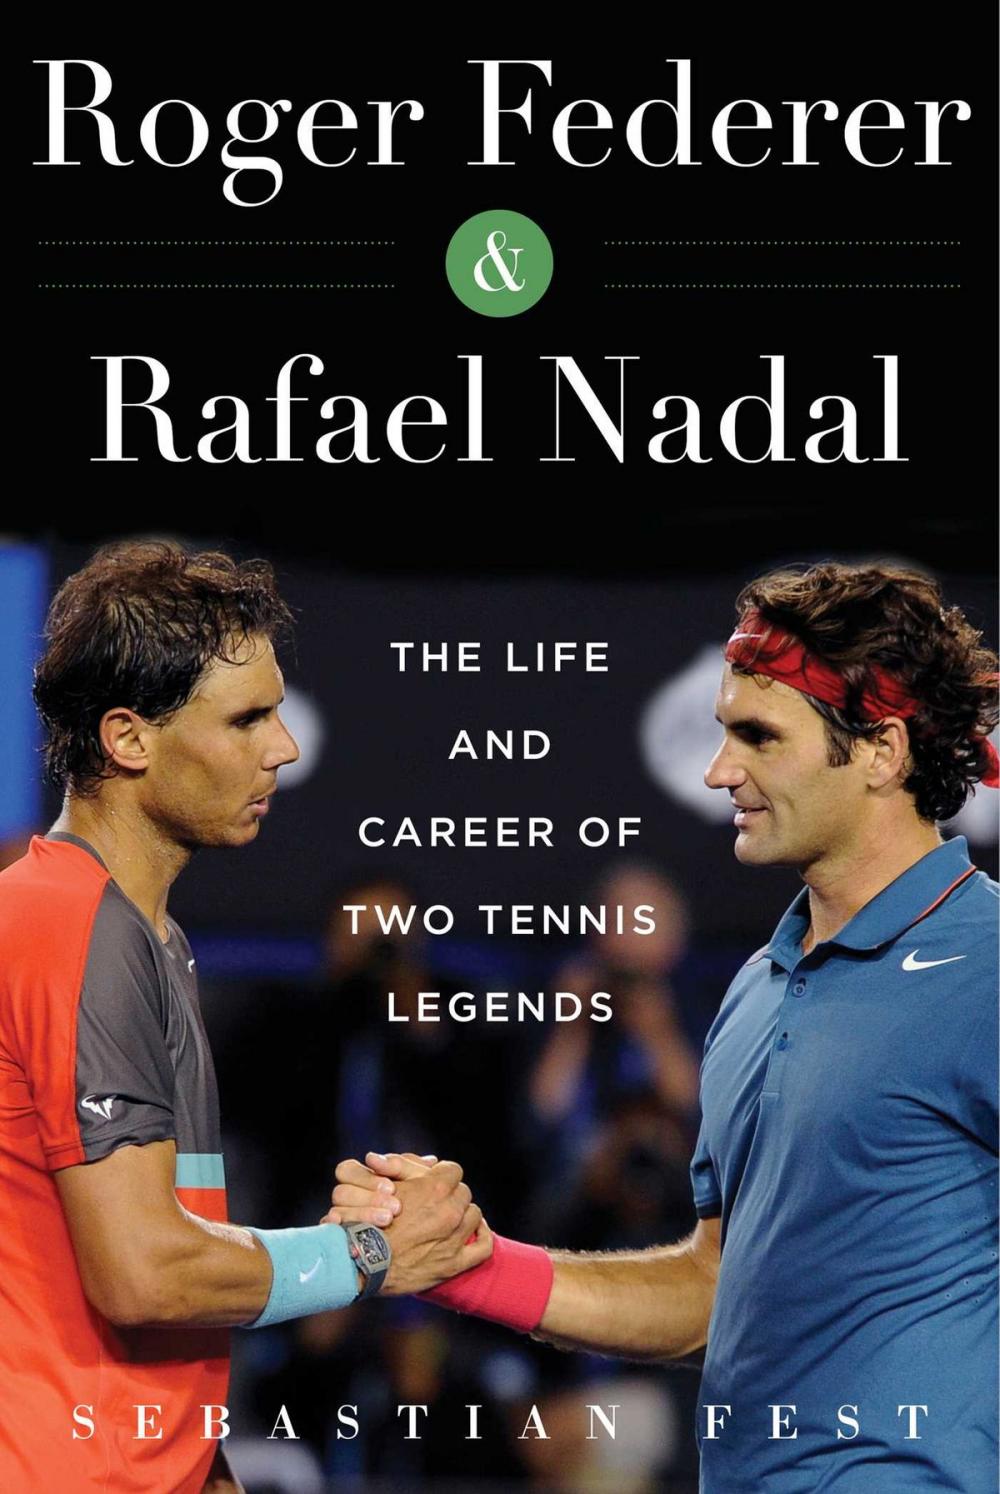 Big bigCover of Roger Federer and Rafael Nadal